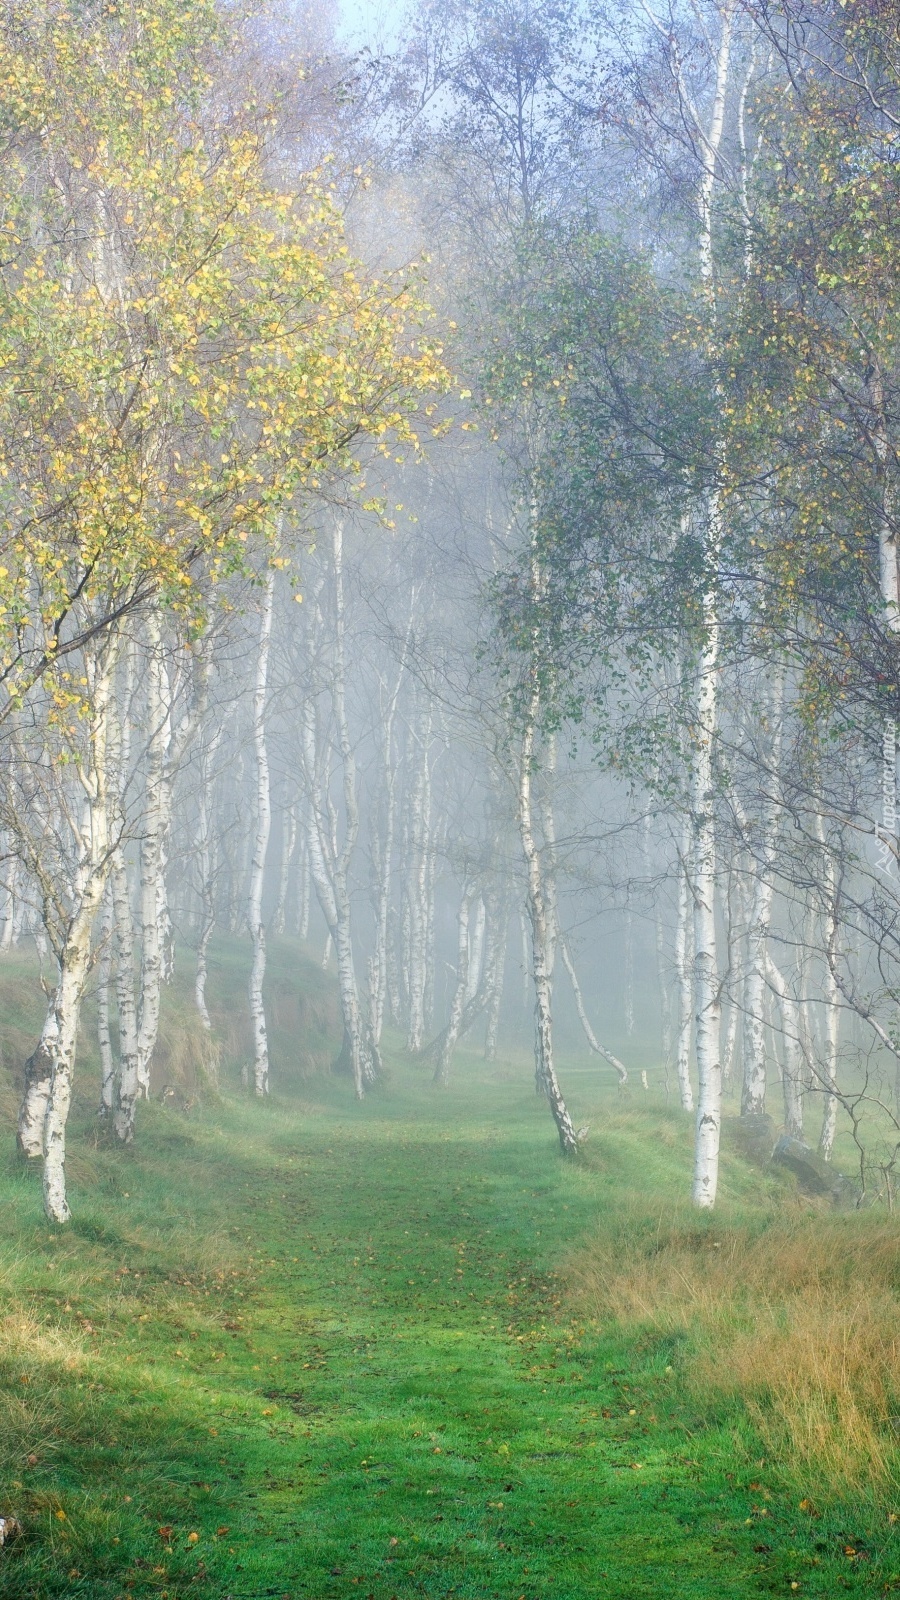 Brzozowy lasek z drogą w oparach mgły